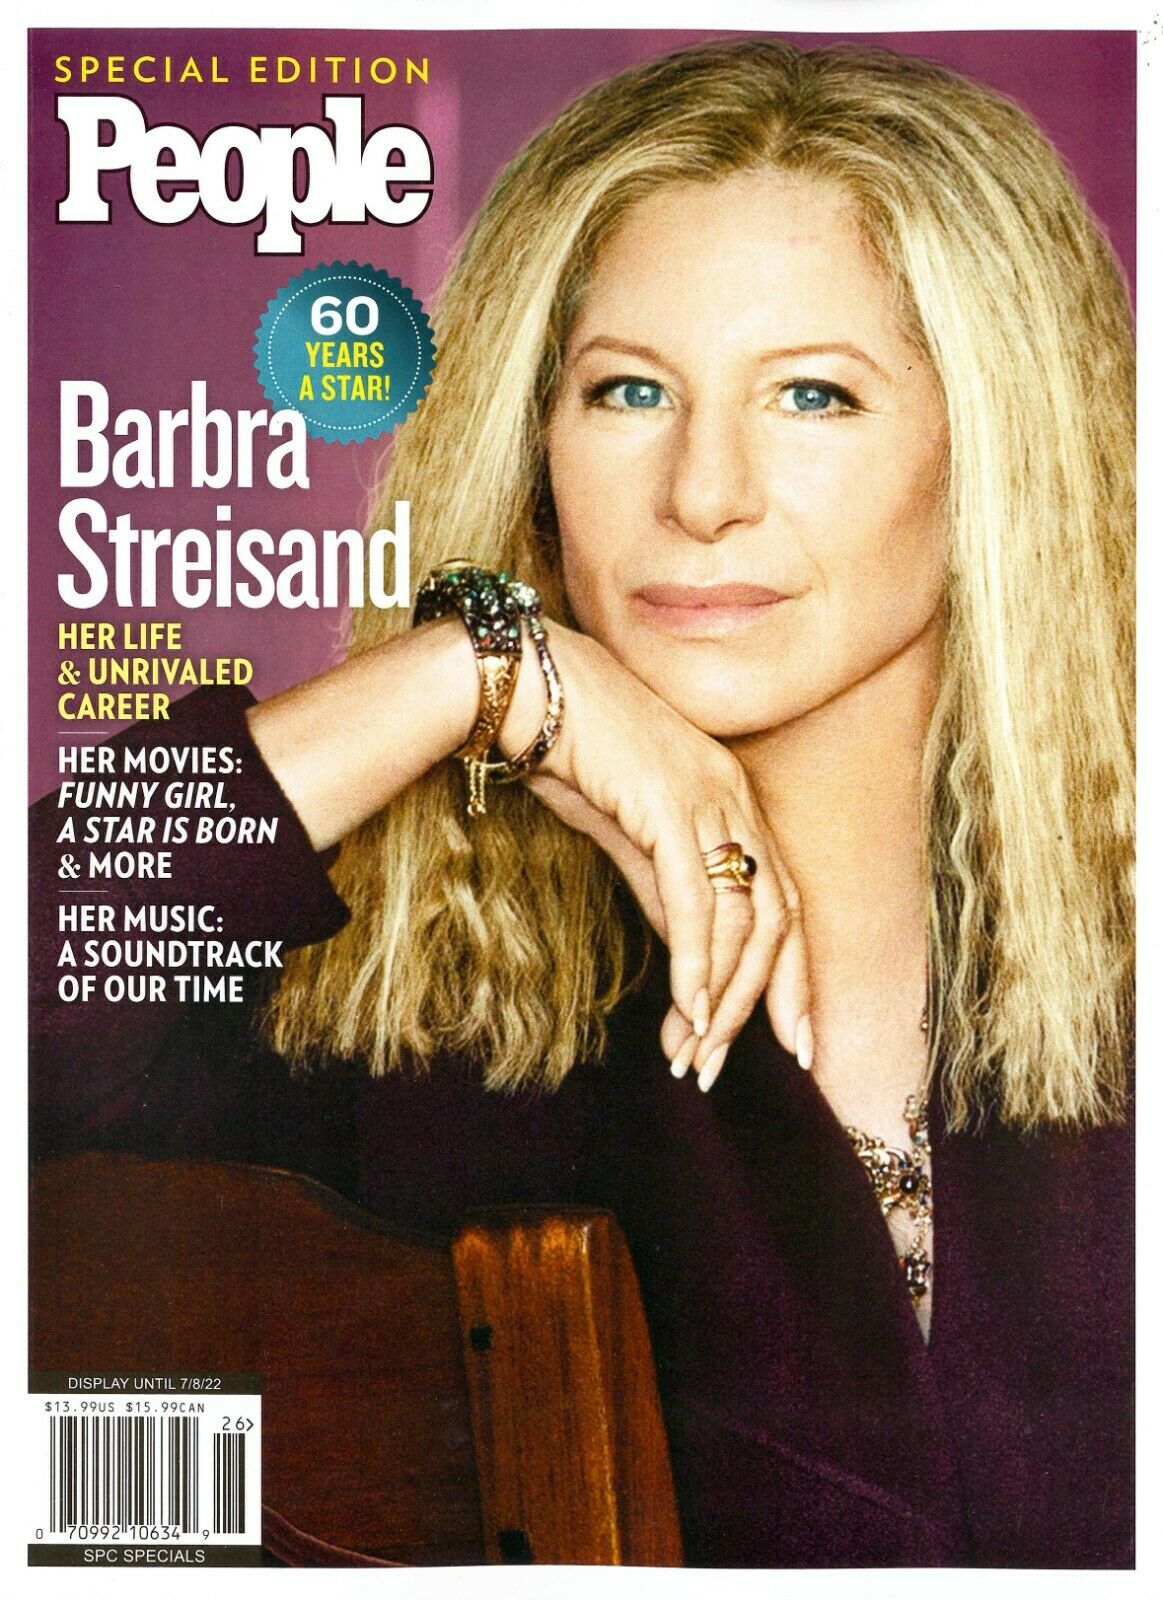 Inside Barbra Streisand's World